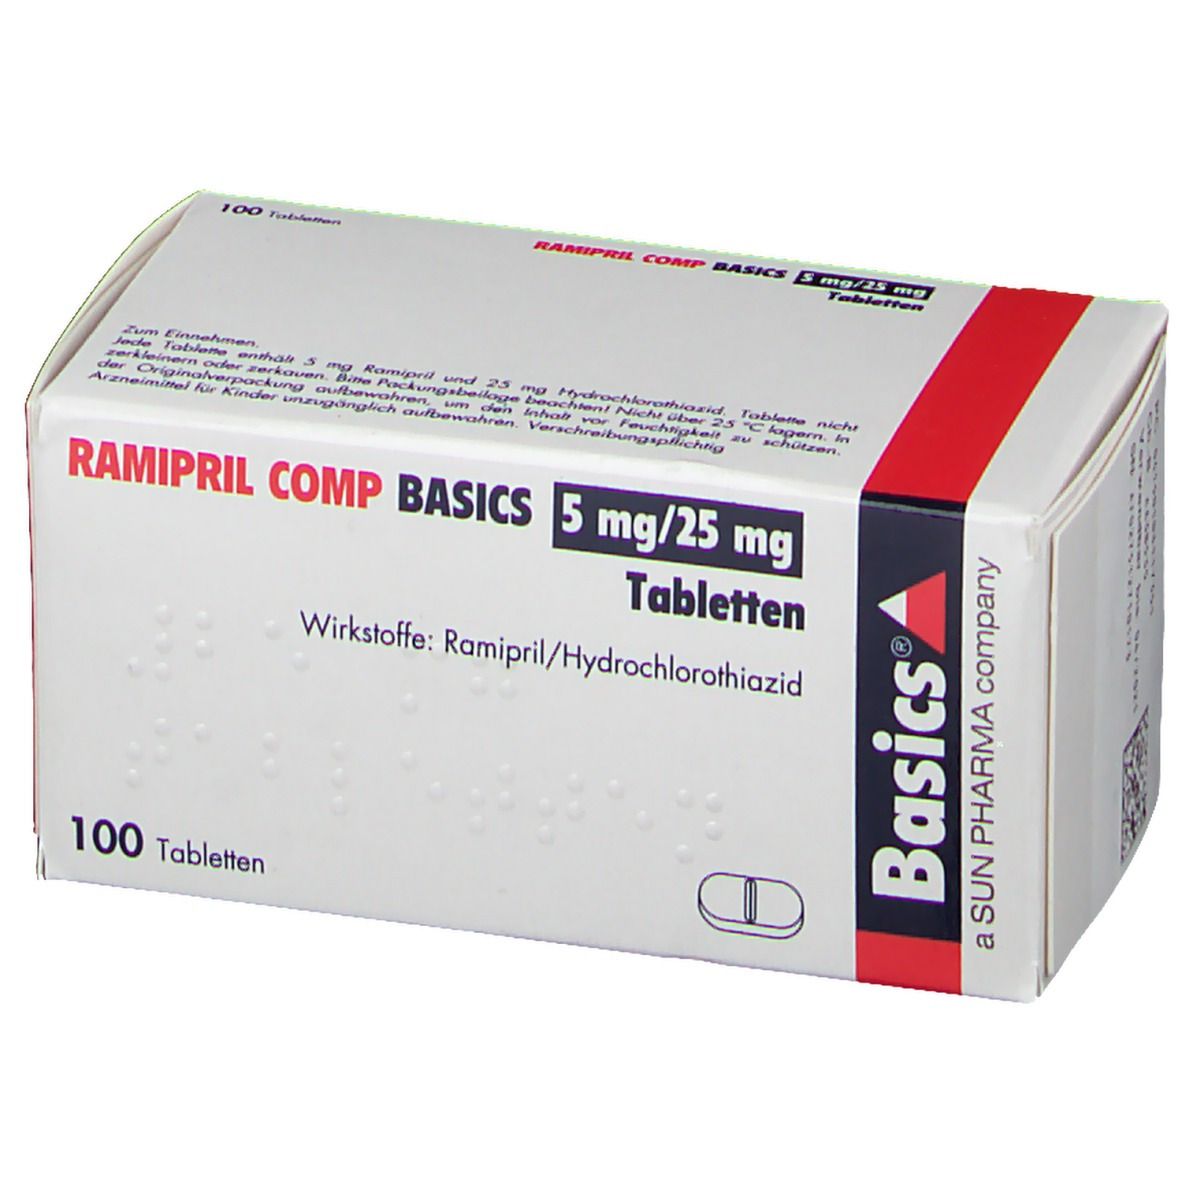 RAMIPRIL COMP BASICS 5 mg/25 mg